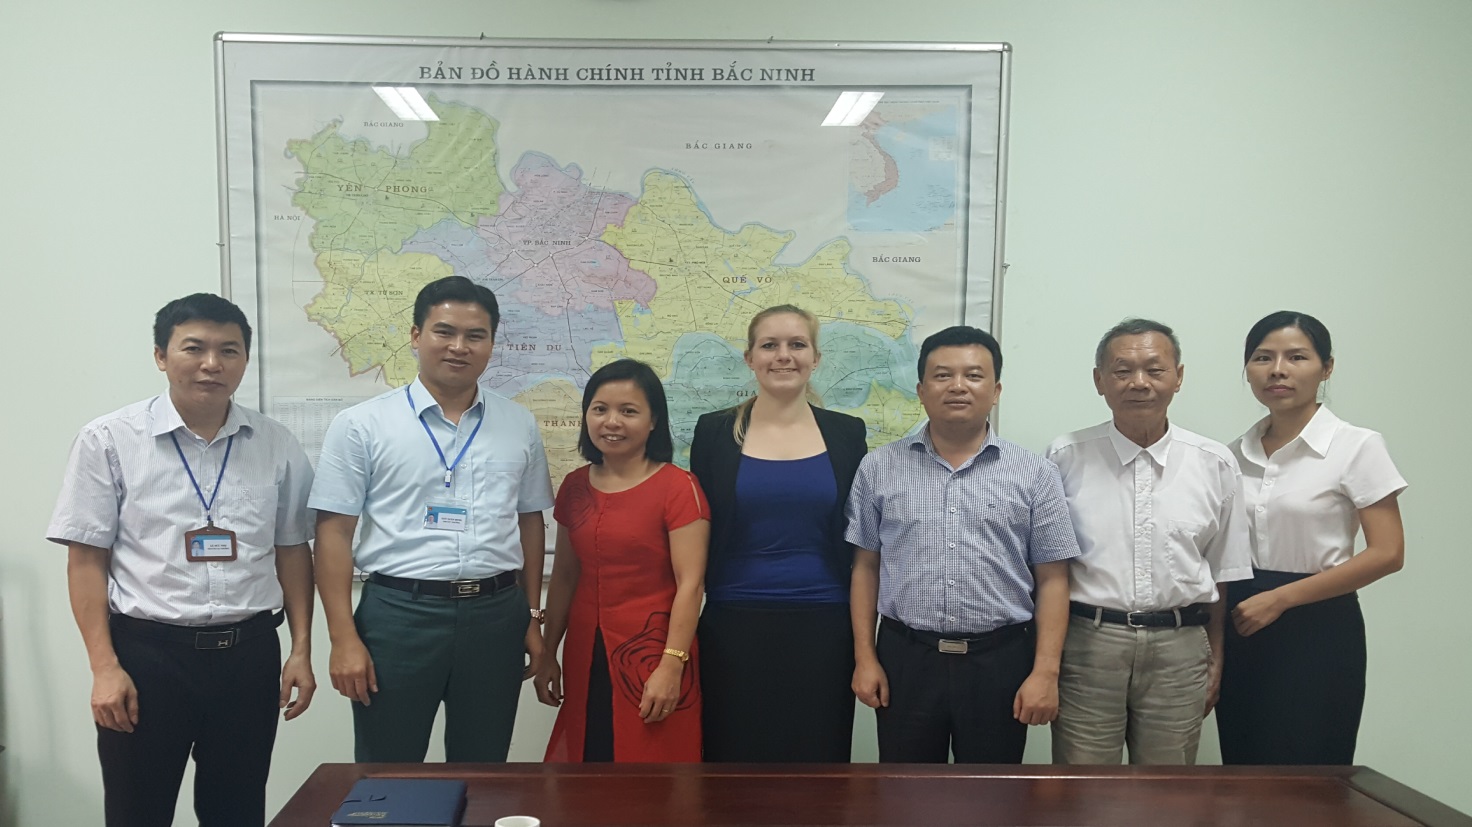 Triển khi Dự án Lập bản đồ ô nhiễm môi trường đất tỉnh Bắc Ninh